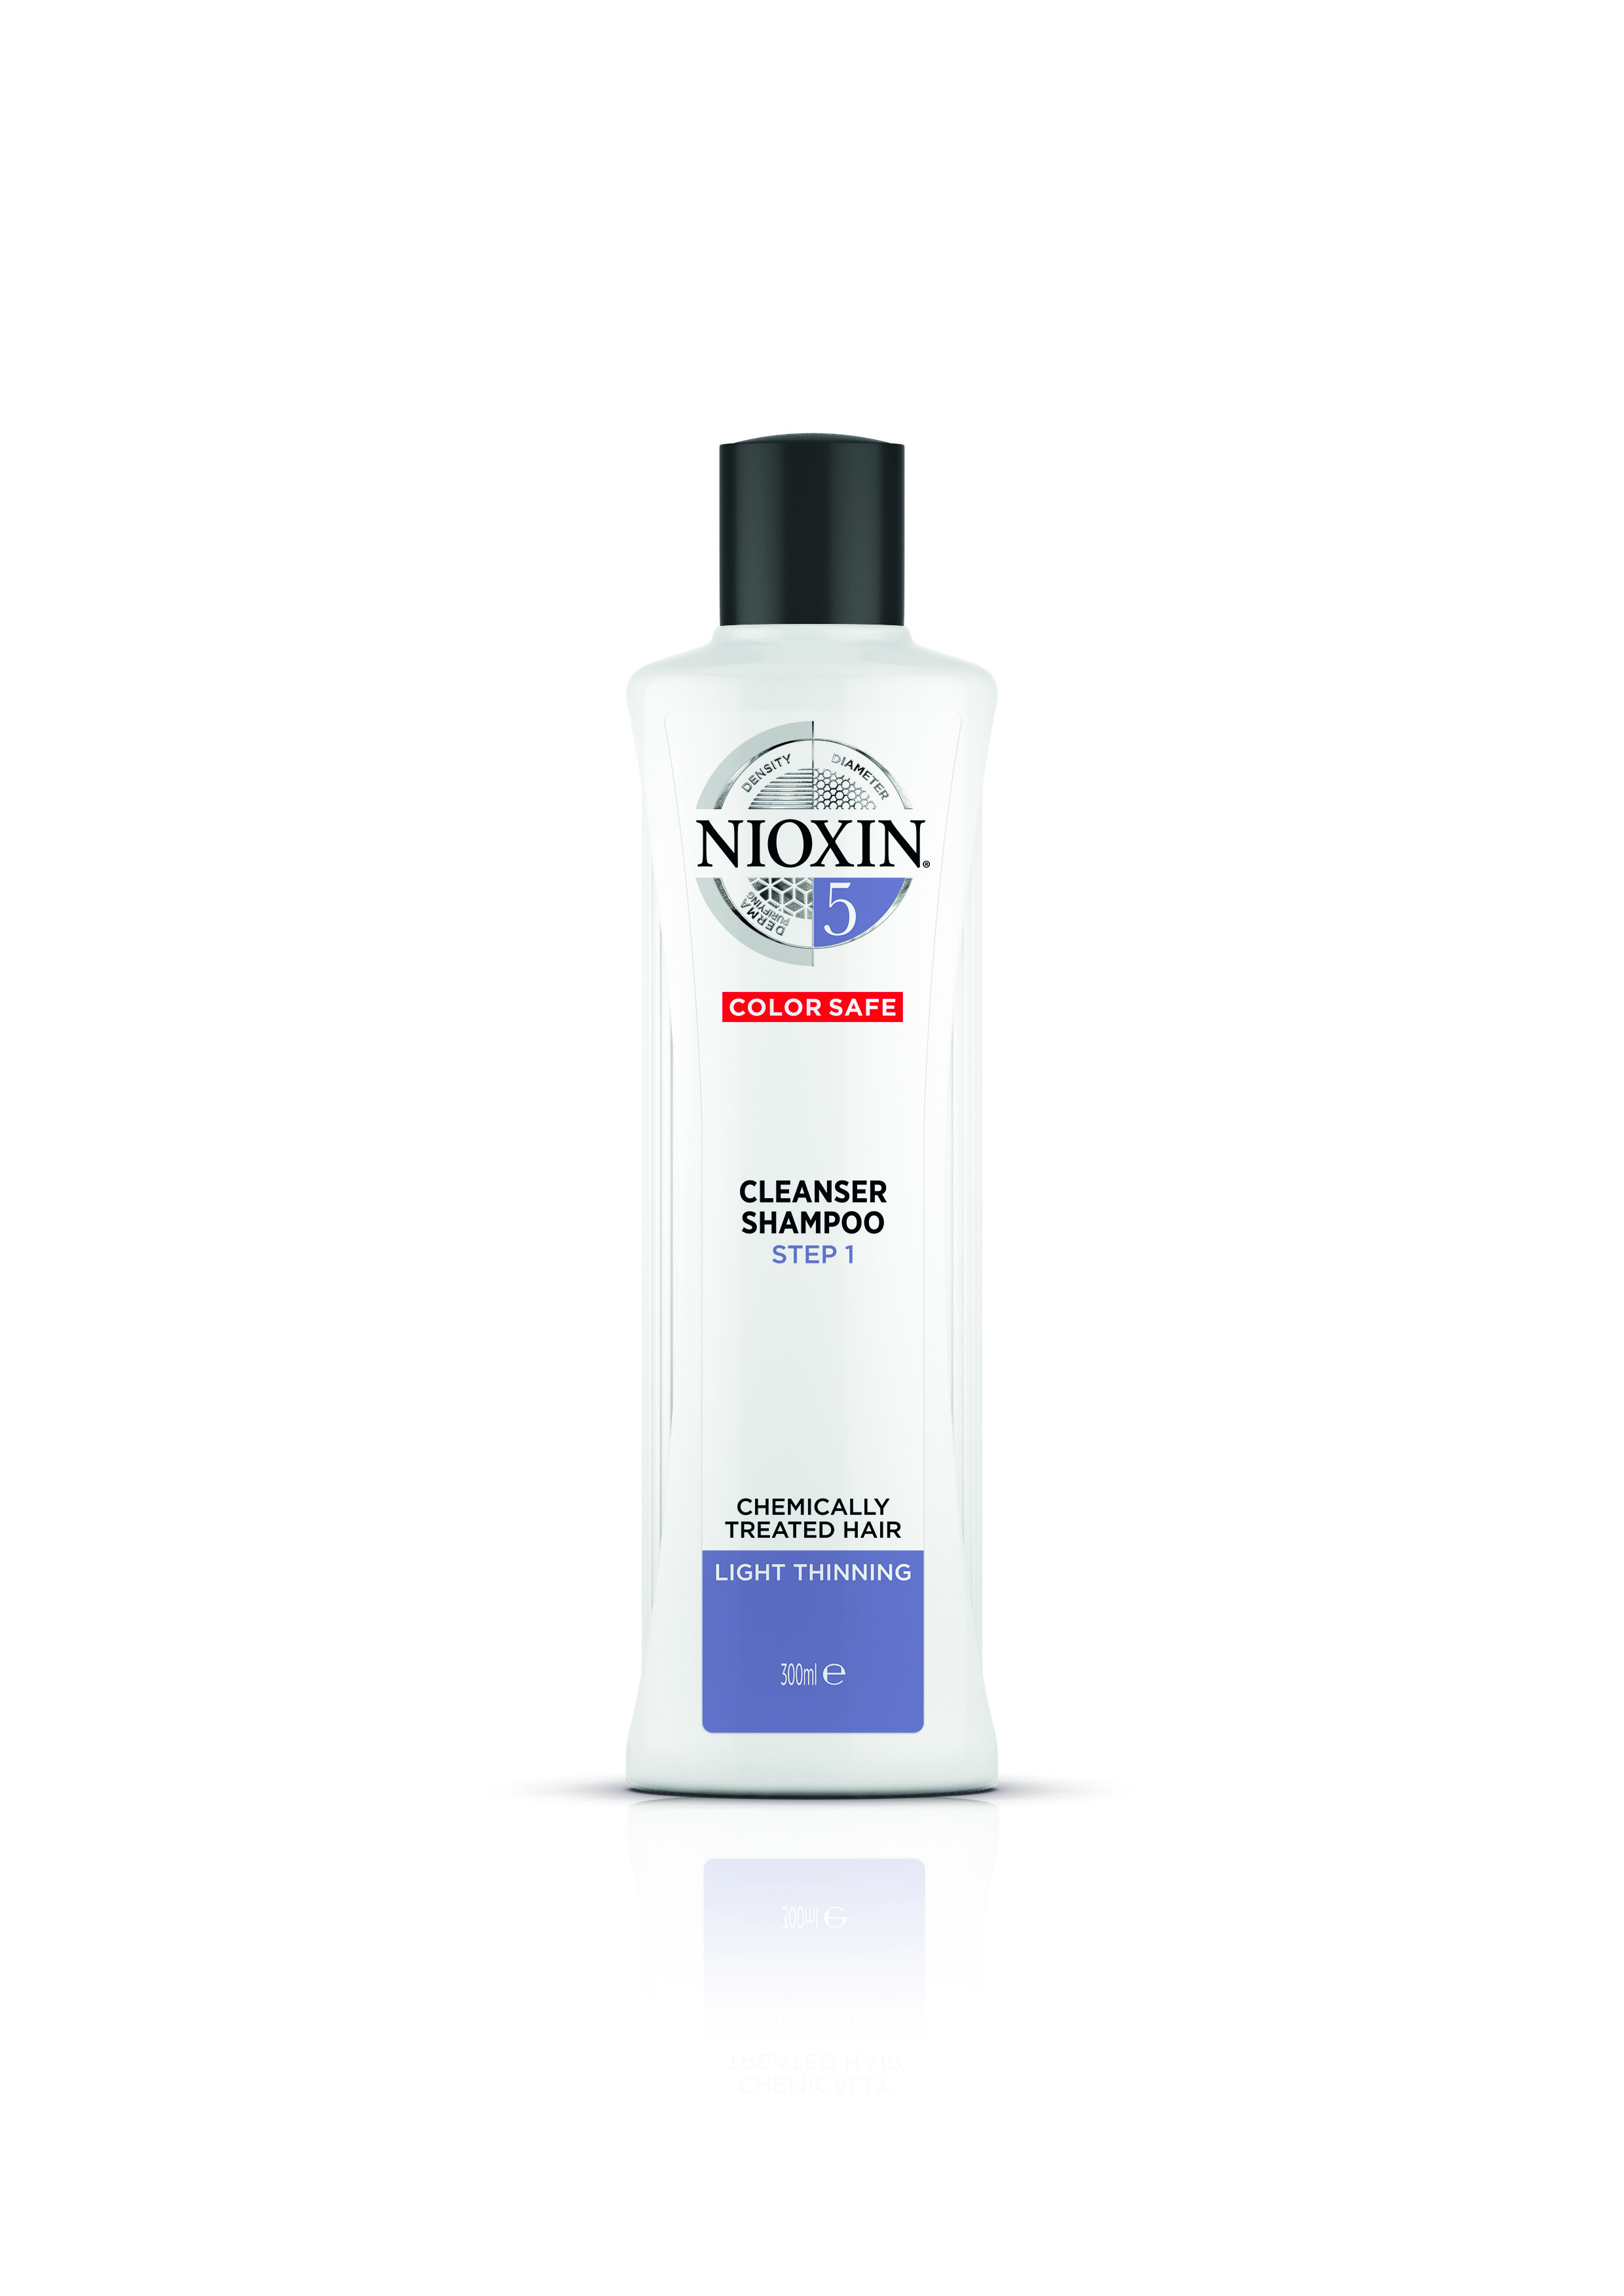 NIOXIN Шампунь очищающий для жестких натуральных и окрашенных волос, Система 5, 300 мл система россолимо сицилианская защита